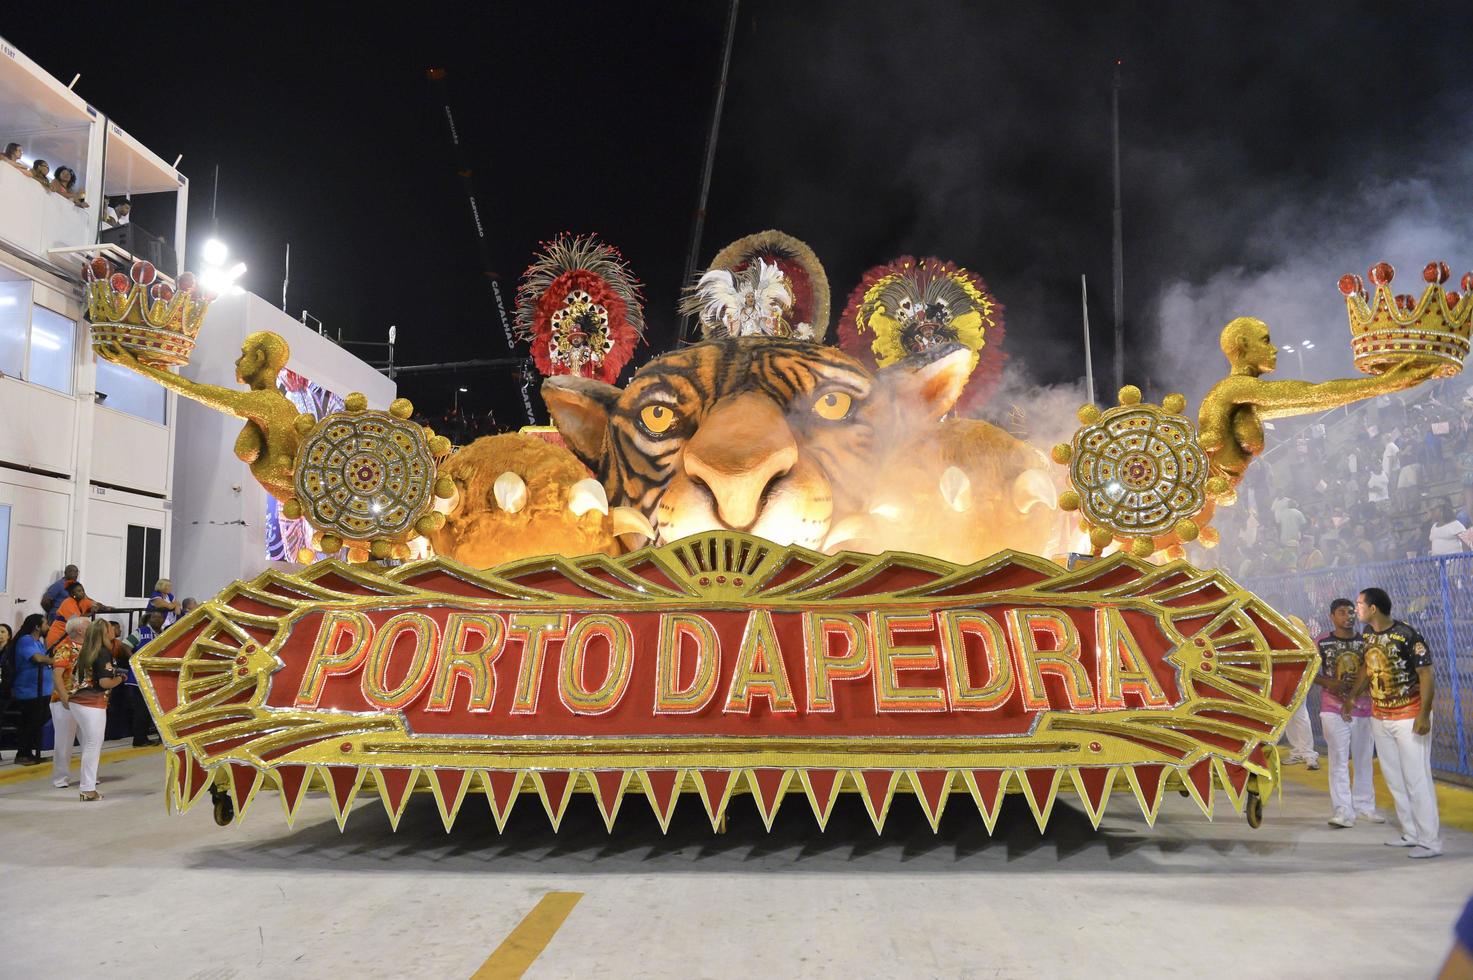 rio de janeiro, rj brasilien - 09. februar 2018 - samba-schulparade im sambodromo. unidos do porto da pedra während des festivals in der marques de sapucai straße. foto